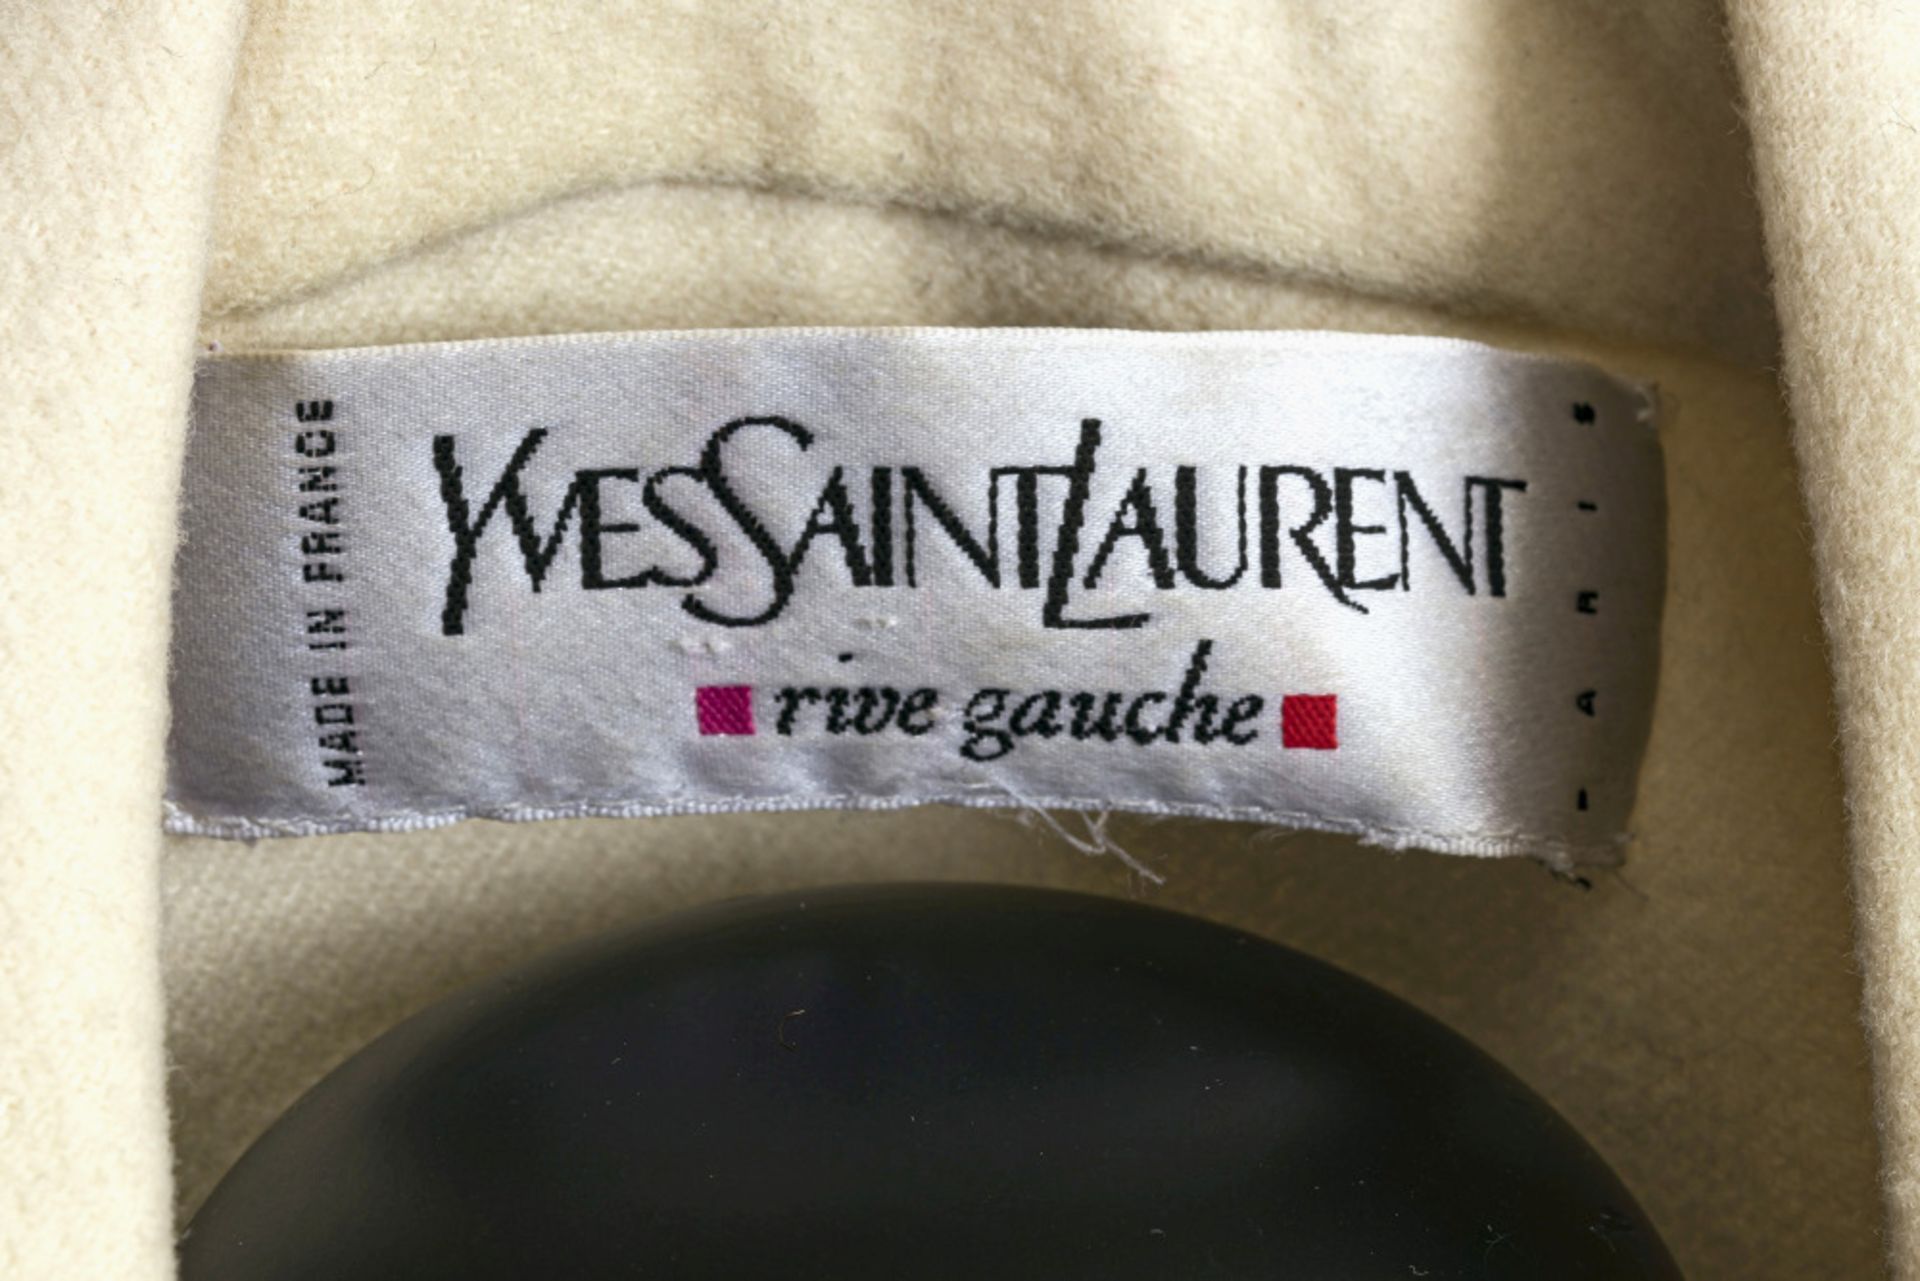 Mantel - Yves Saint Laurent, Rive Gauche, Paris - Bild 2 aus 2